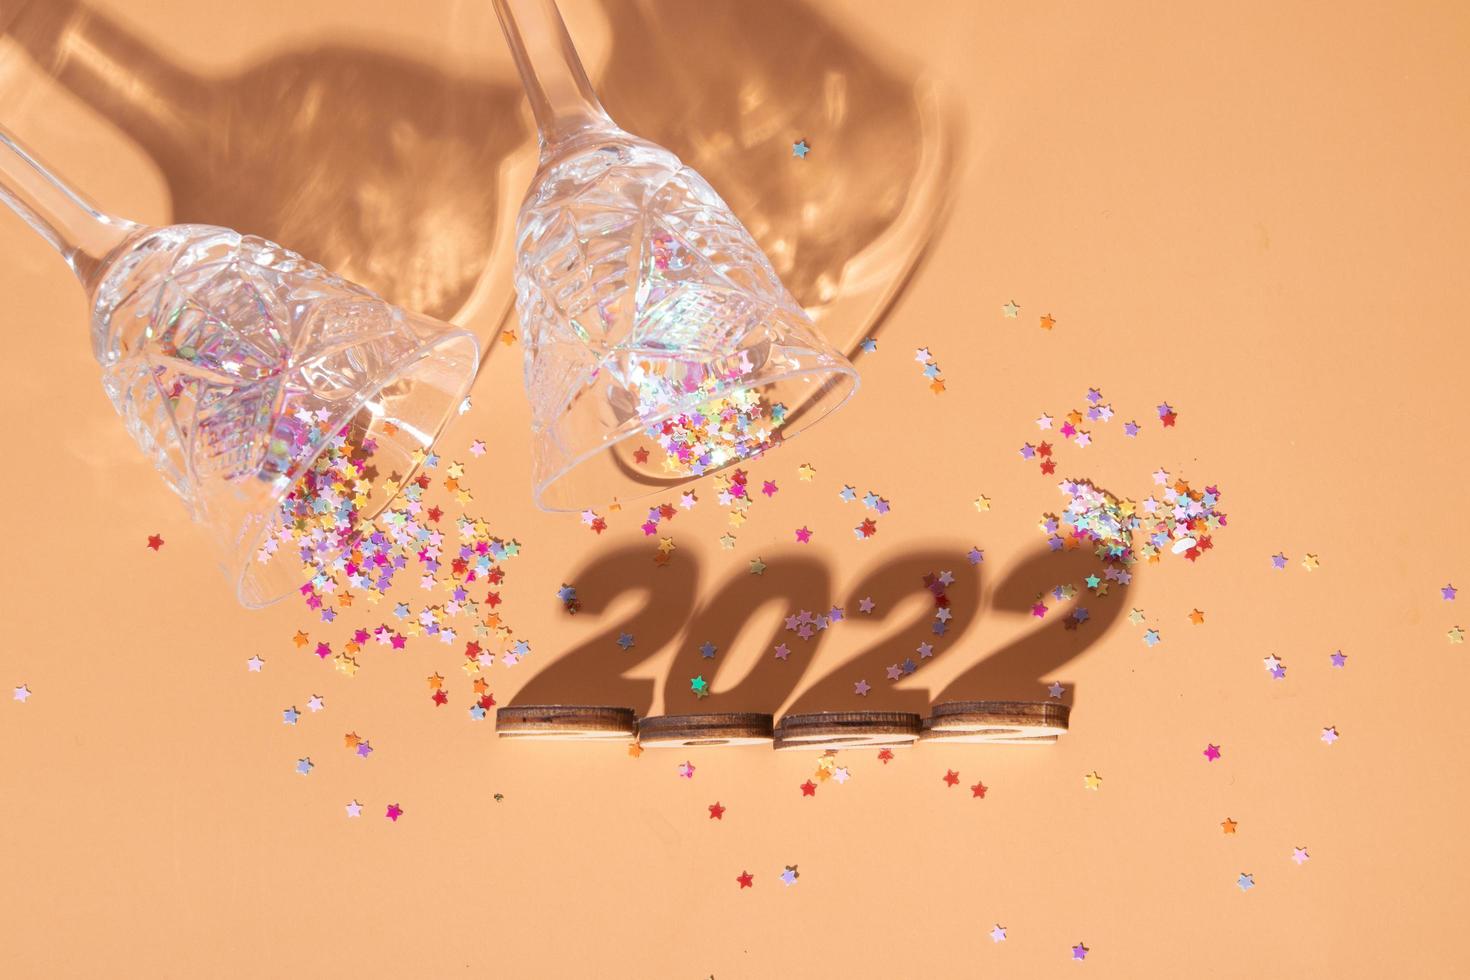 festlig nyårslägenhet låg med siffror 2022 och hårda skuggor med glasögon och blank inredning foto